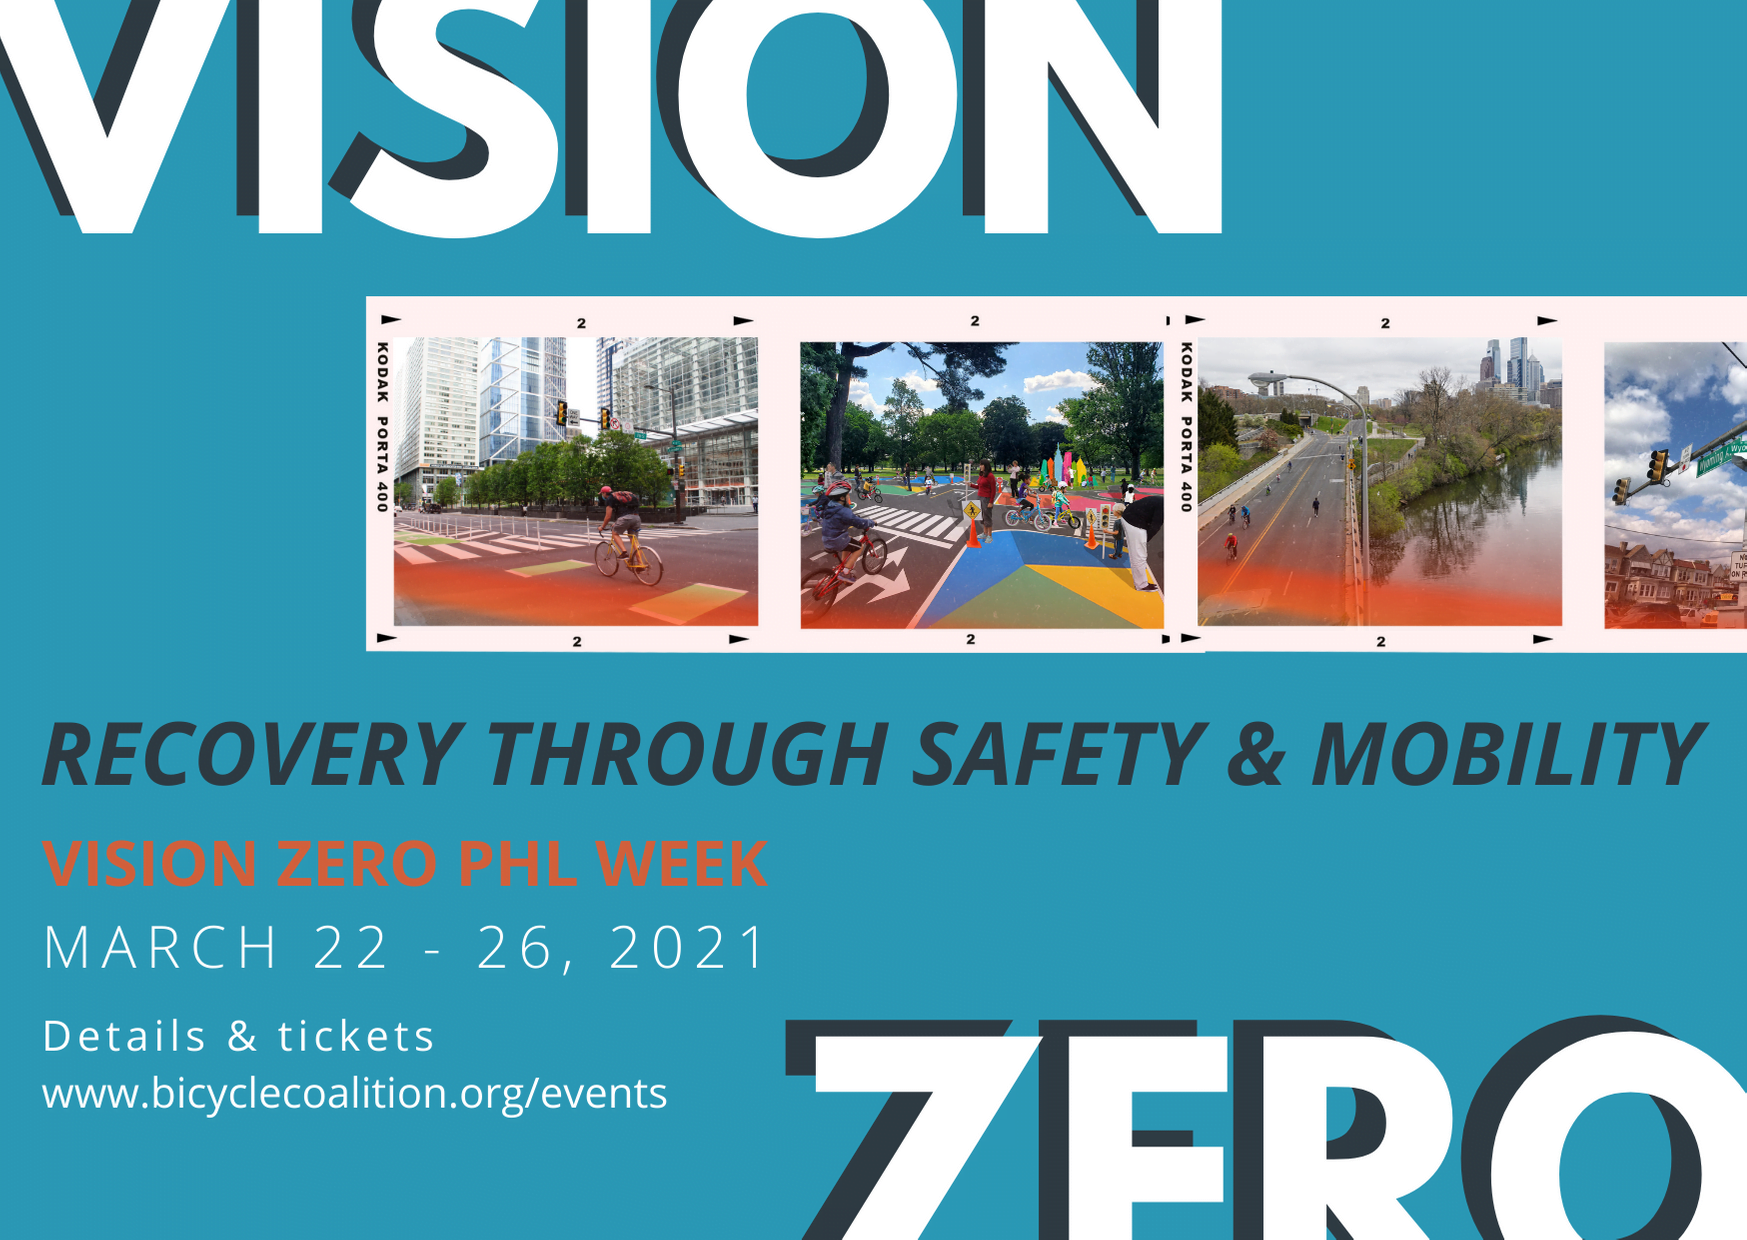 Vision Zero Conference Philadelphia - March 22 - 26, 2021